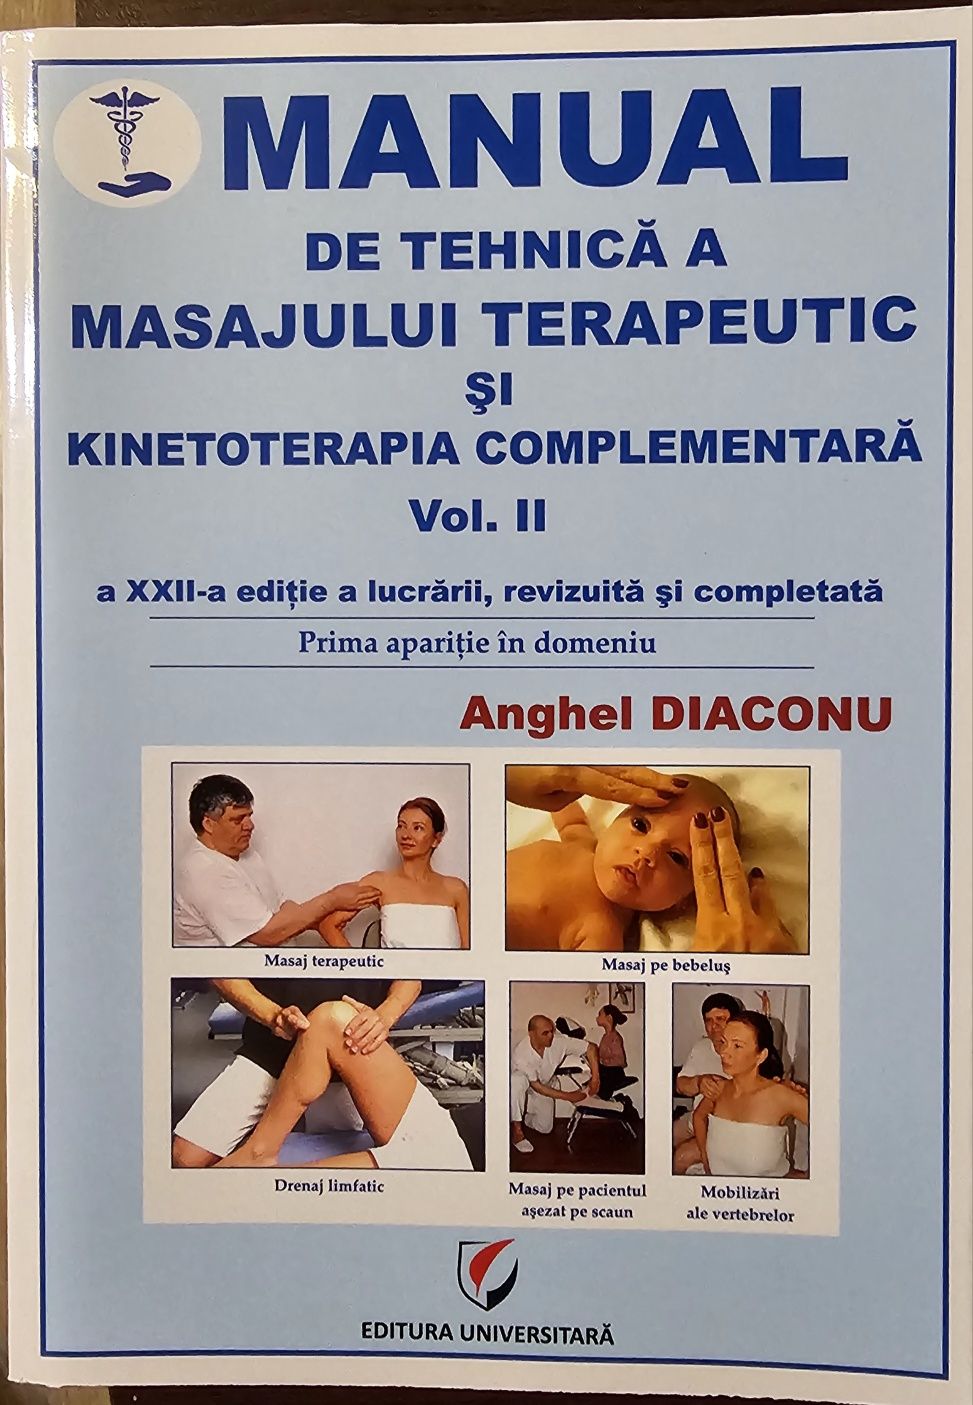 Manual de Tehnică a Masajului Terapeutic/Kinetoterapia Complementară